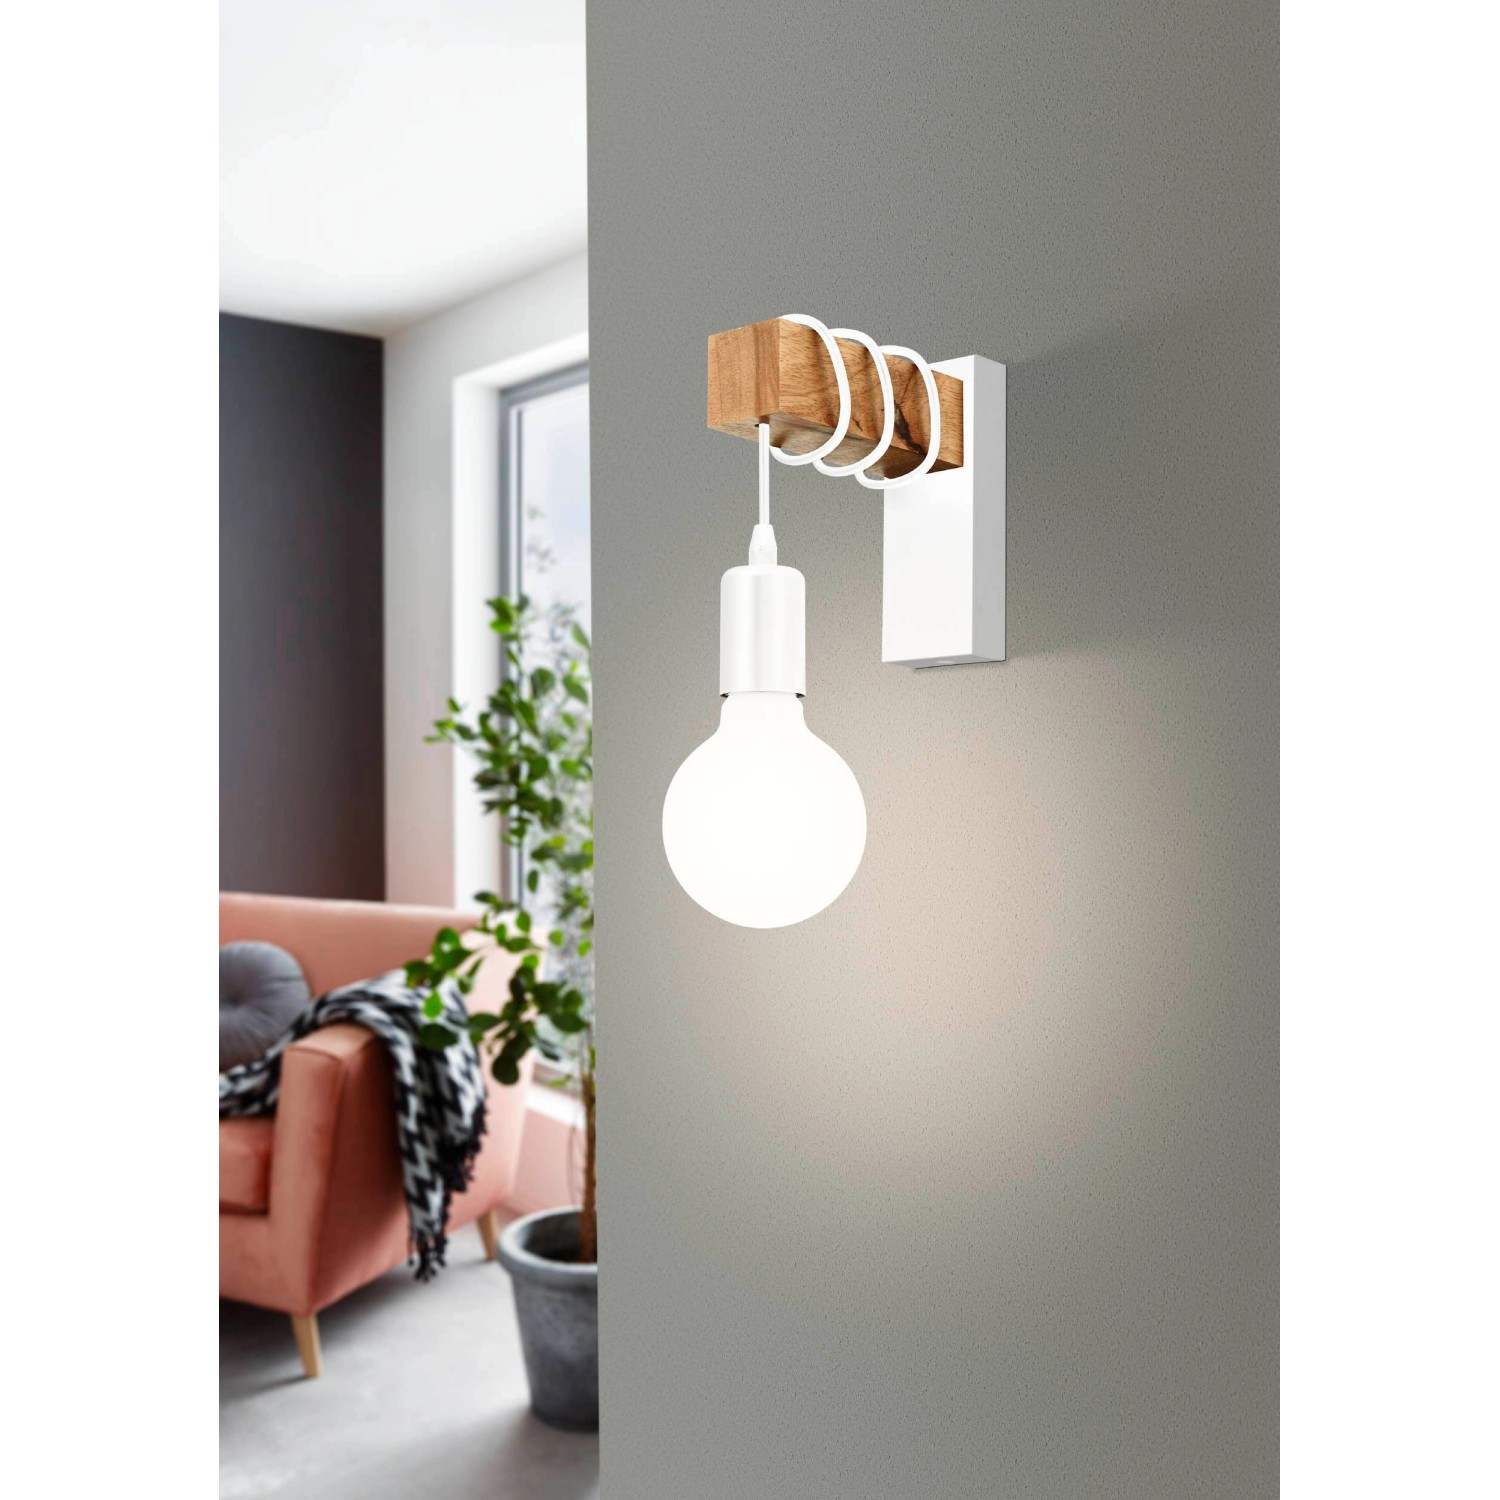 Wandlampen weiß kaufen - OBI für Heim, Haus, Garten und Bau